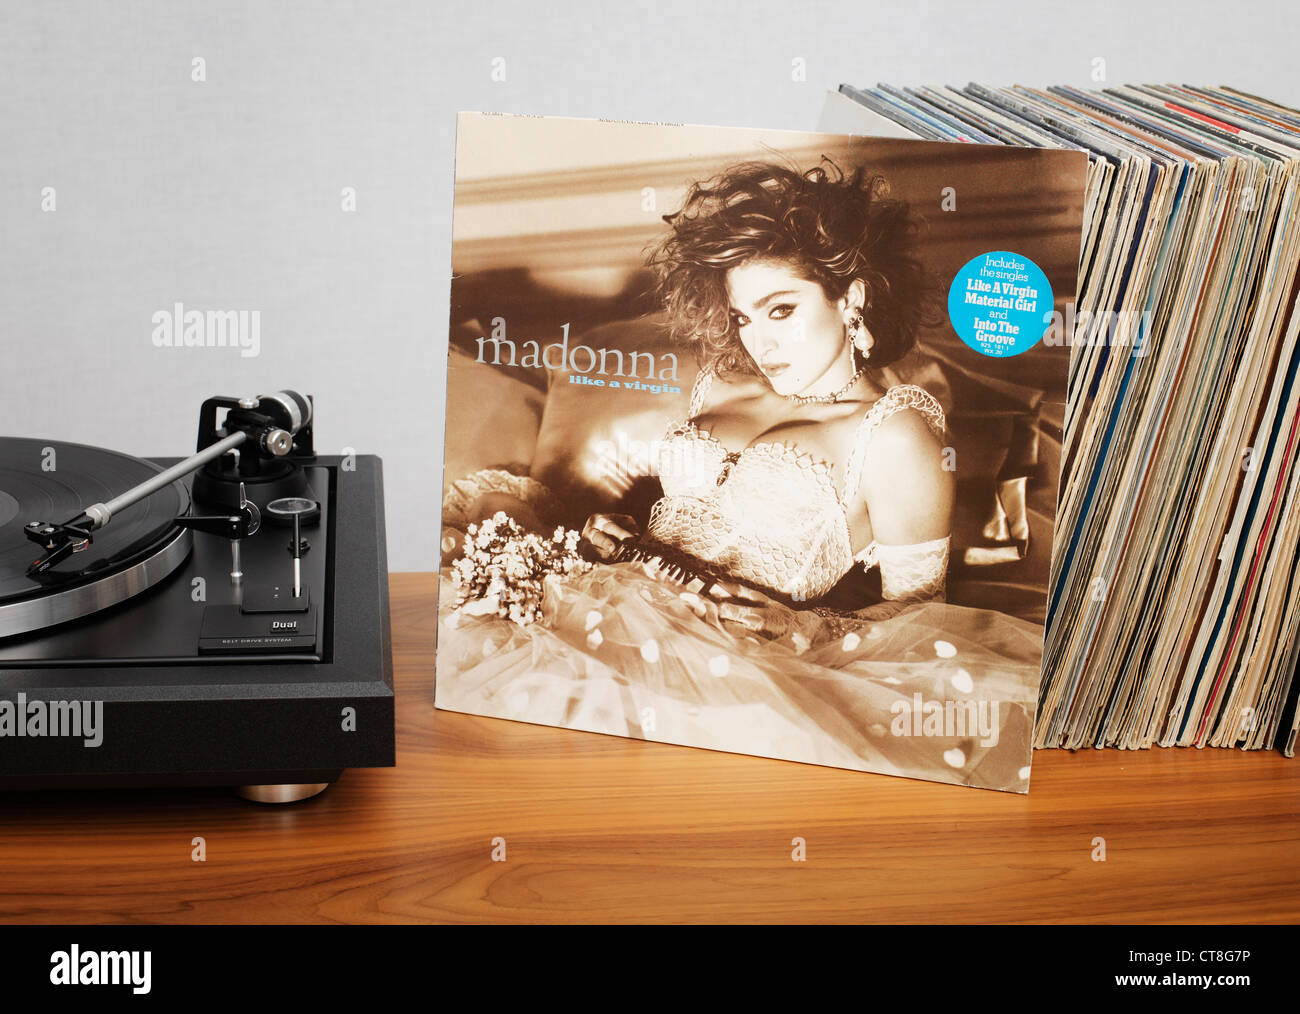 Une Vierge ike est le deuxième album studio de l'artiste américaine Madonna, sorti le 12 novembre 1984 Banque D'Images